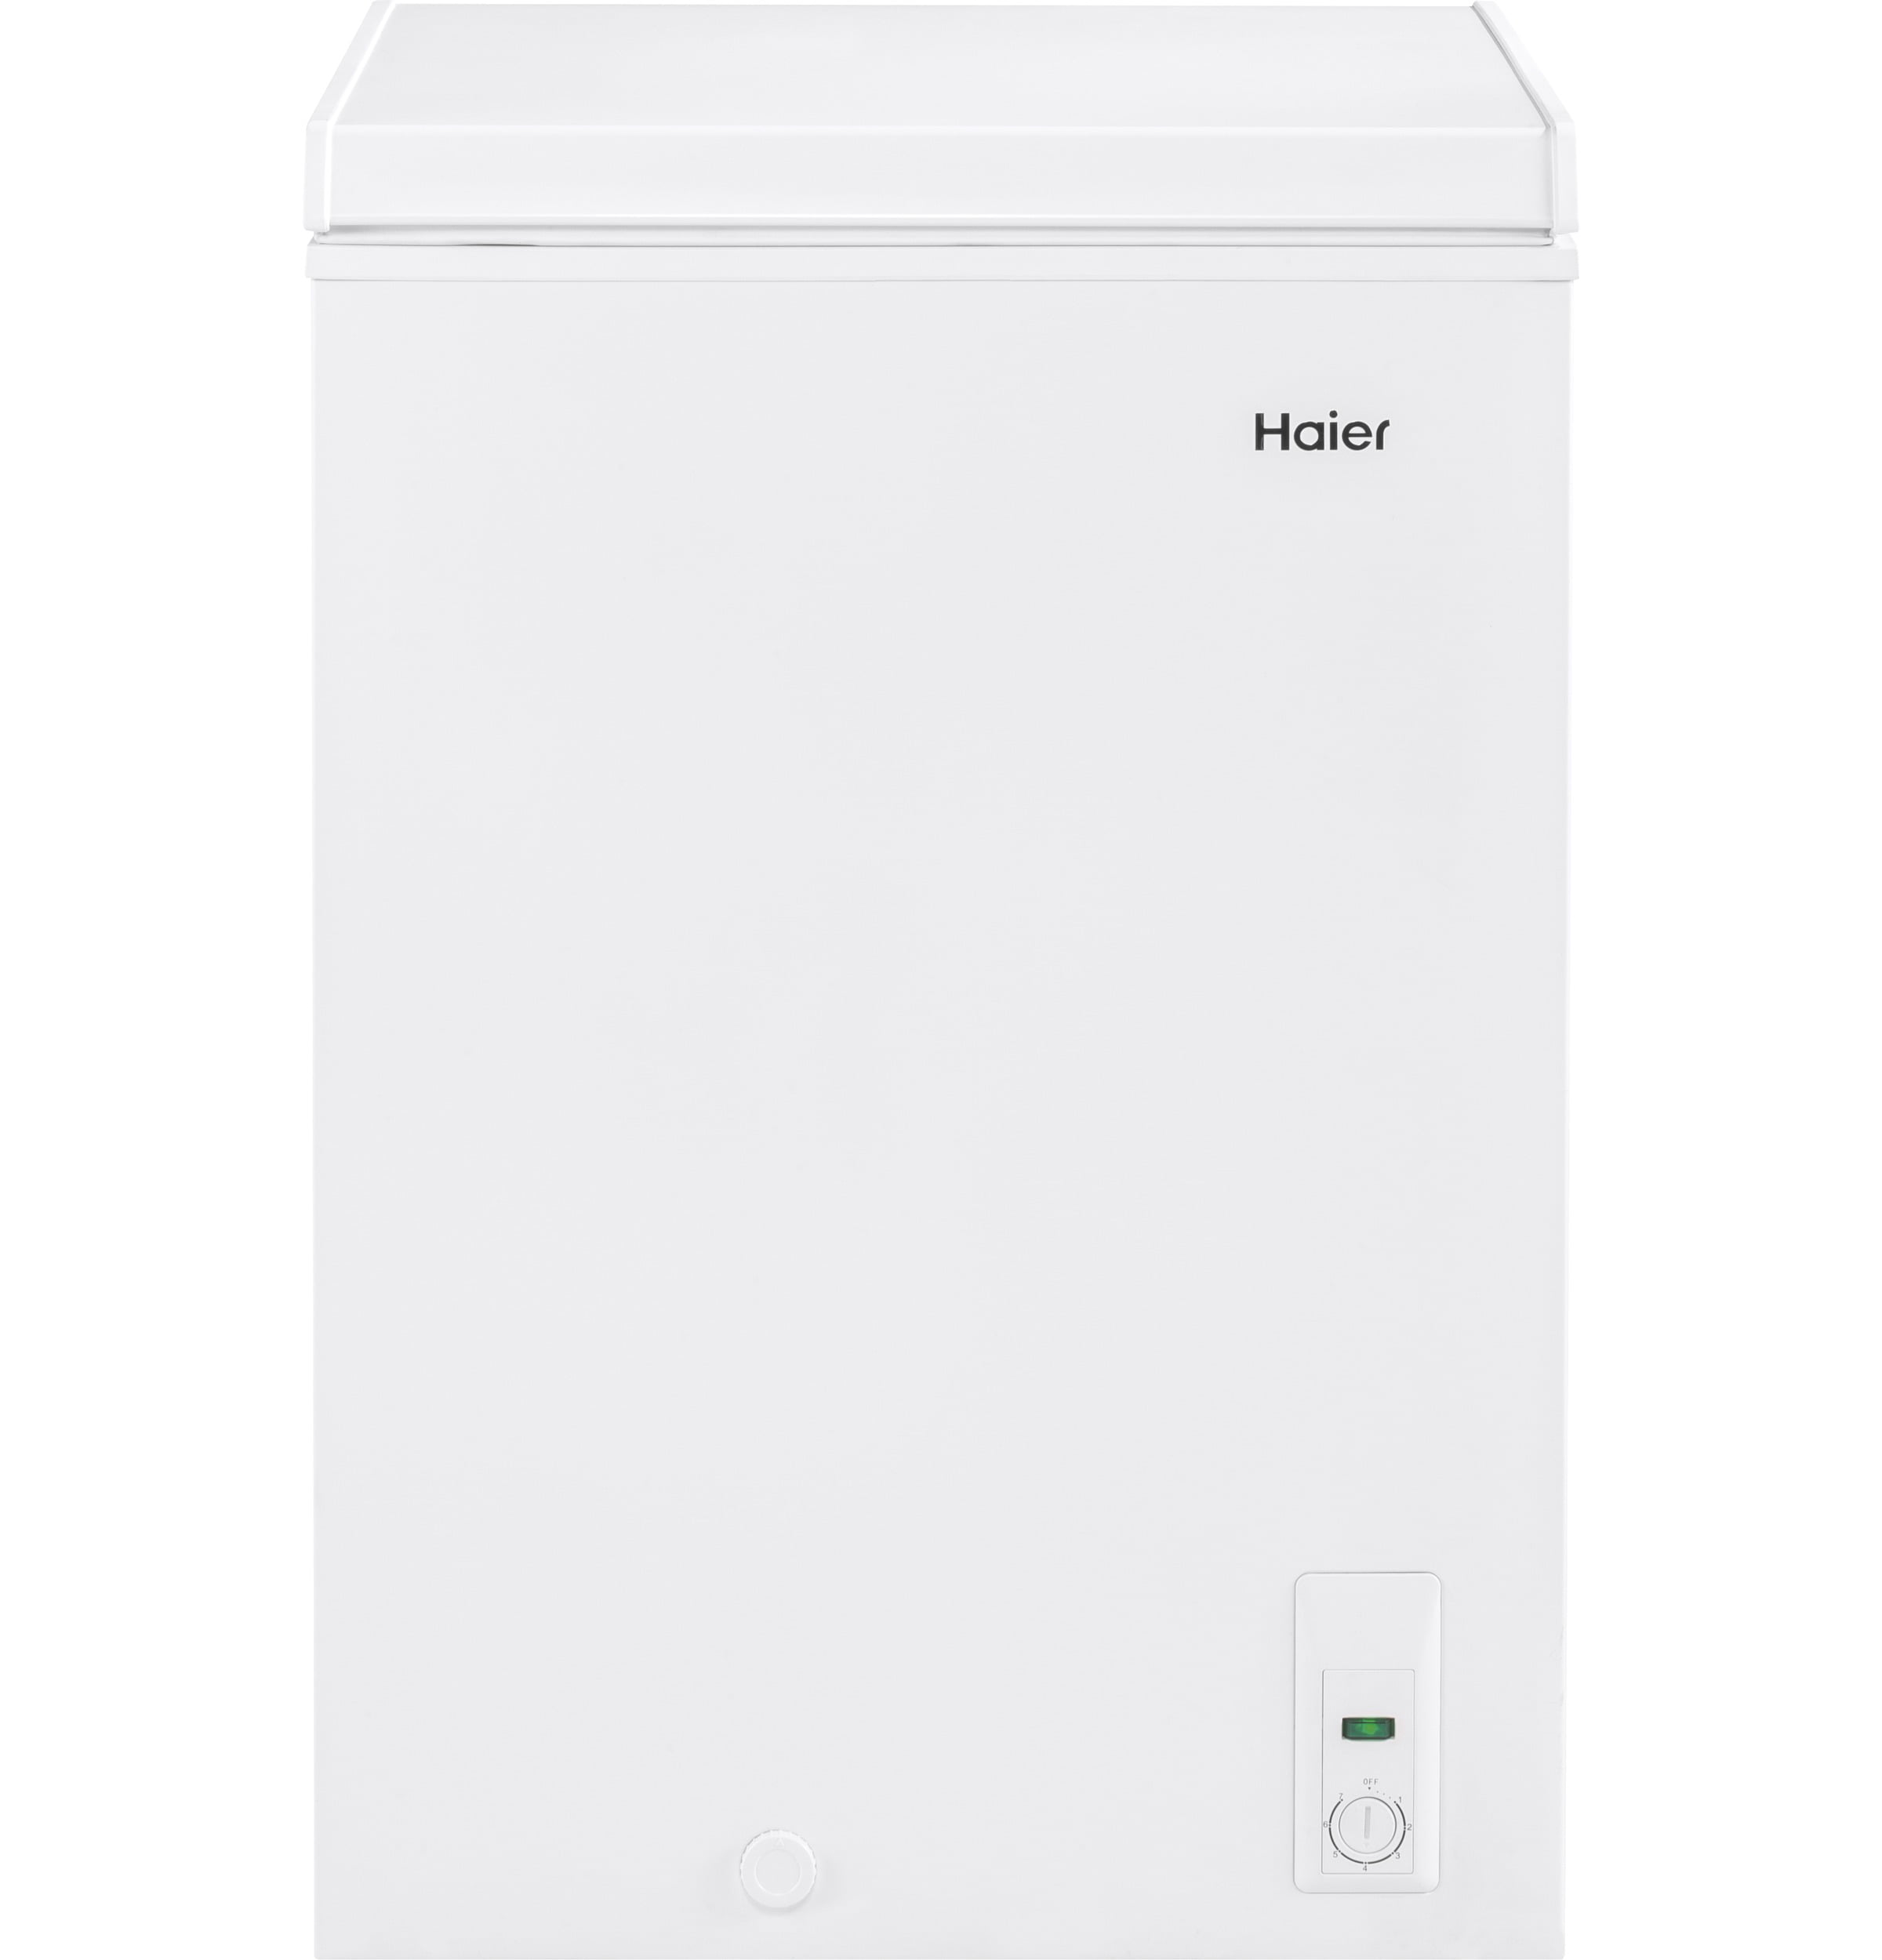 Haier 3.5 Cu. Ft. Chest Freezer HFC3501ACW, White - Walmart.com